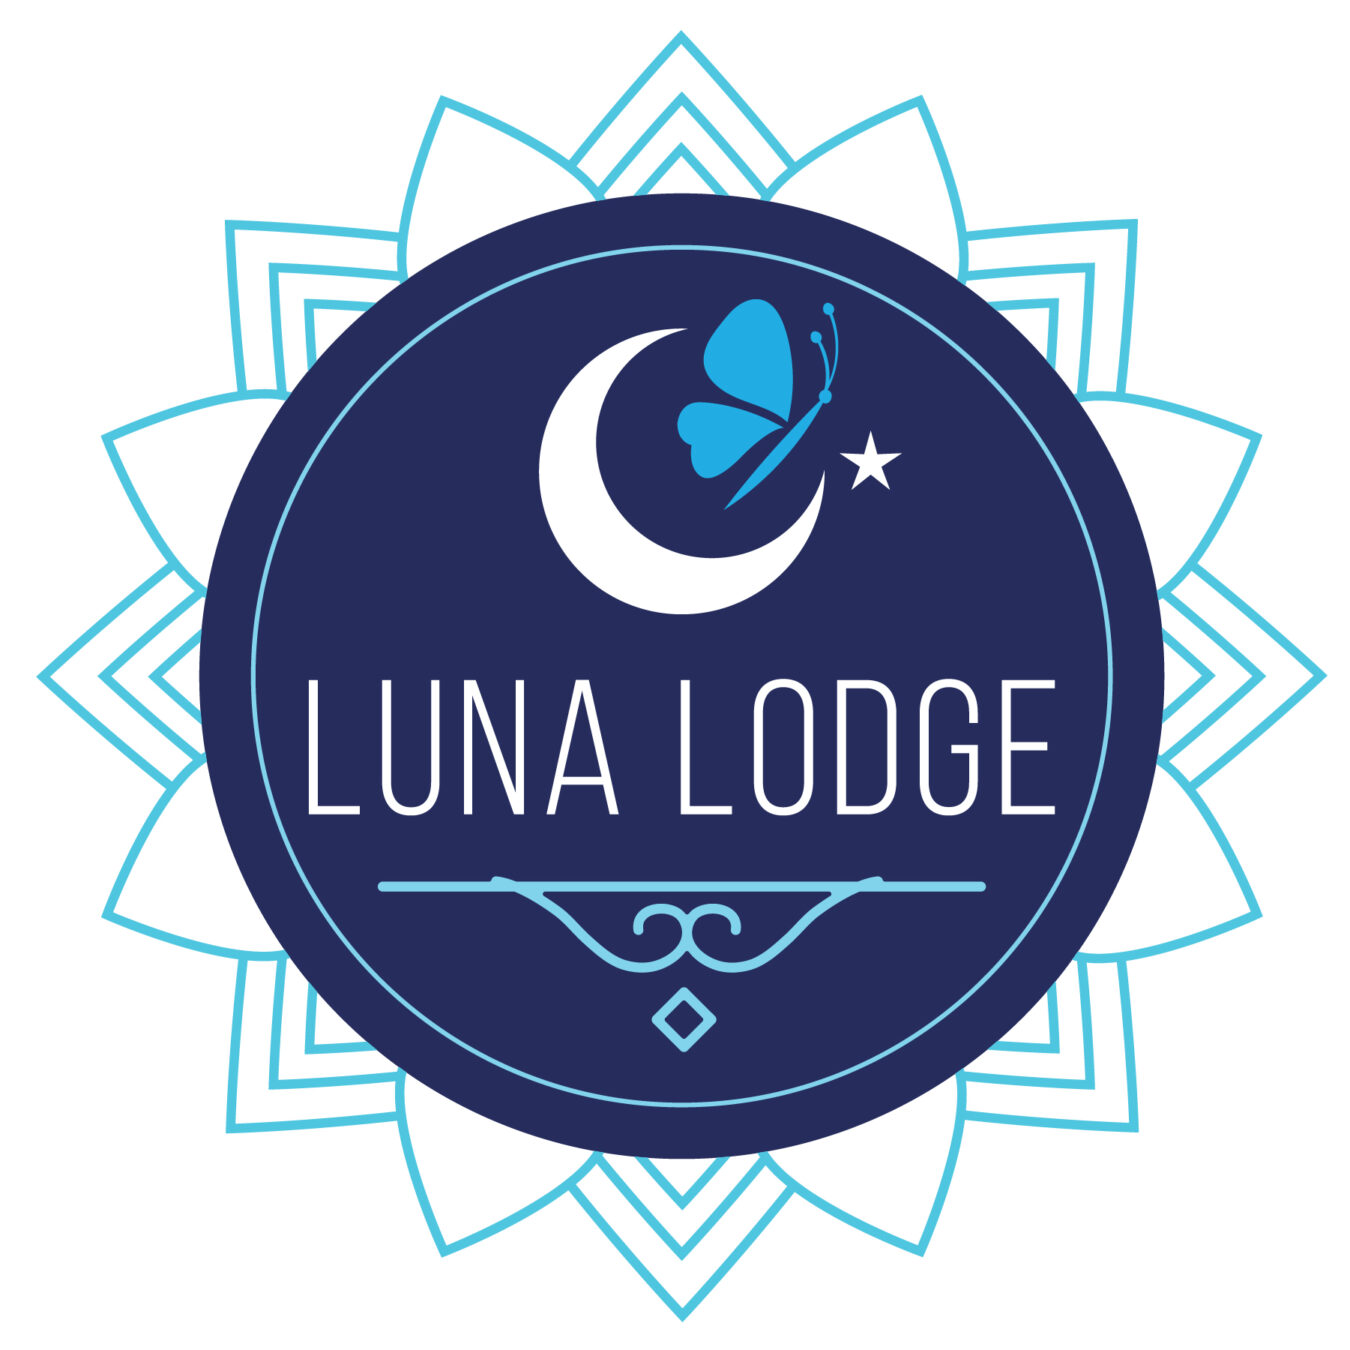 Luna Lodge Osa Peninsula 2023 logo